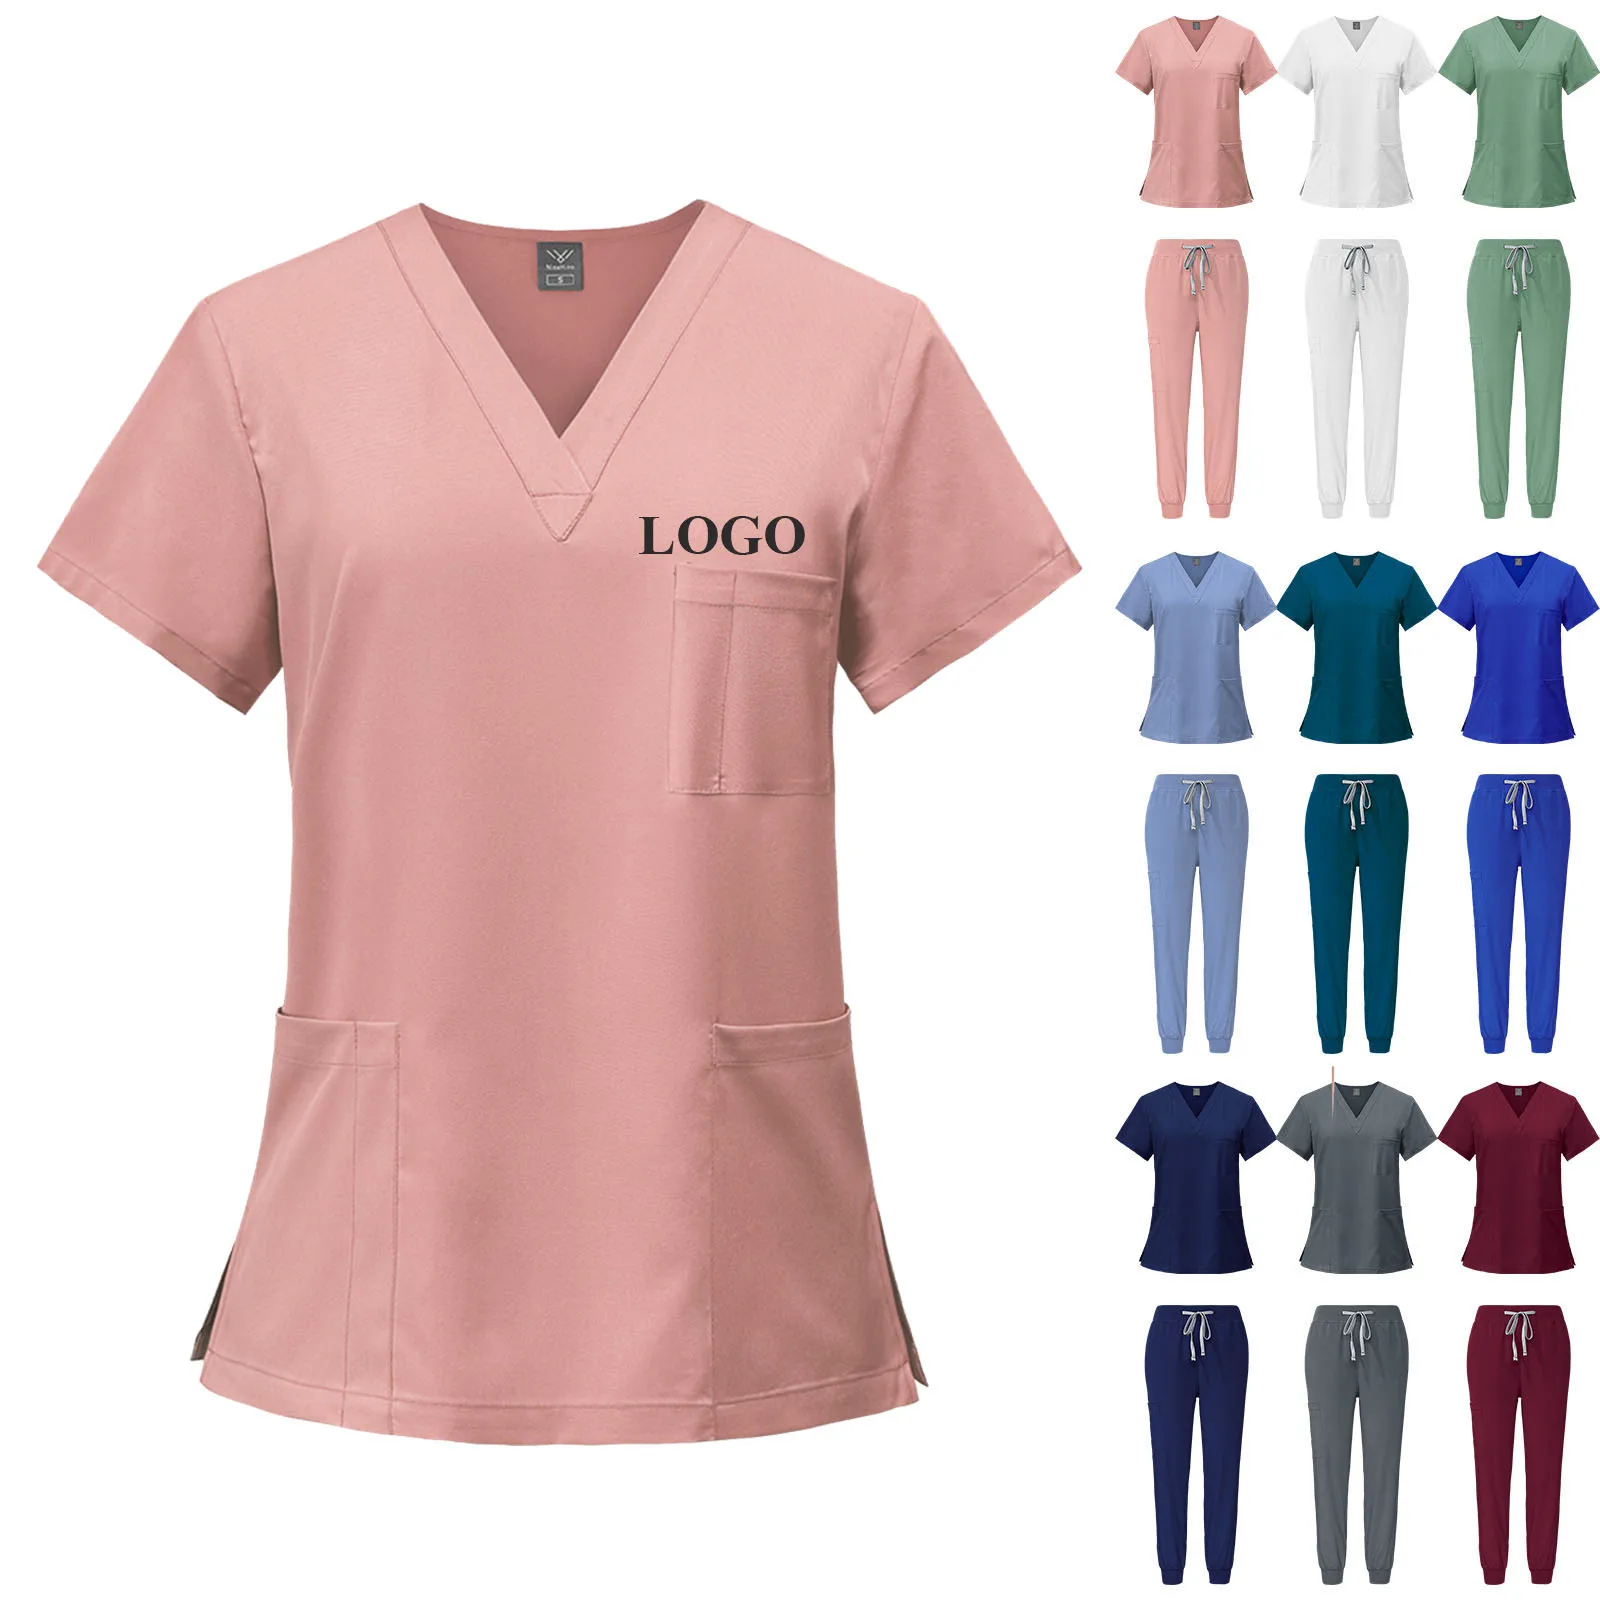 Moda bianco uniformi ospedaliere infermiera bellezza salone dentale abiti da lavoro LOGO personalizzato uniforme scrub medico Jogger set Unisex